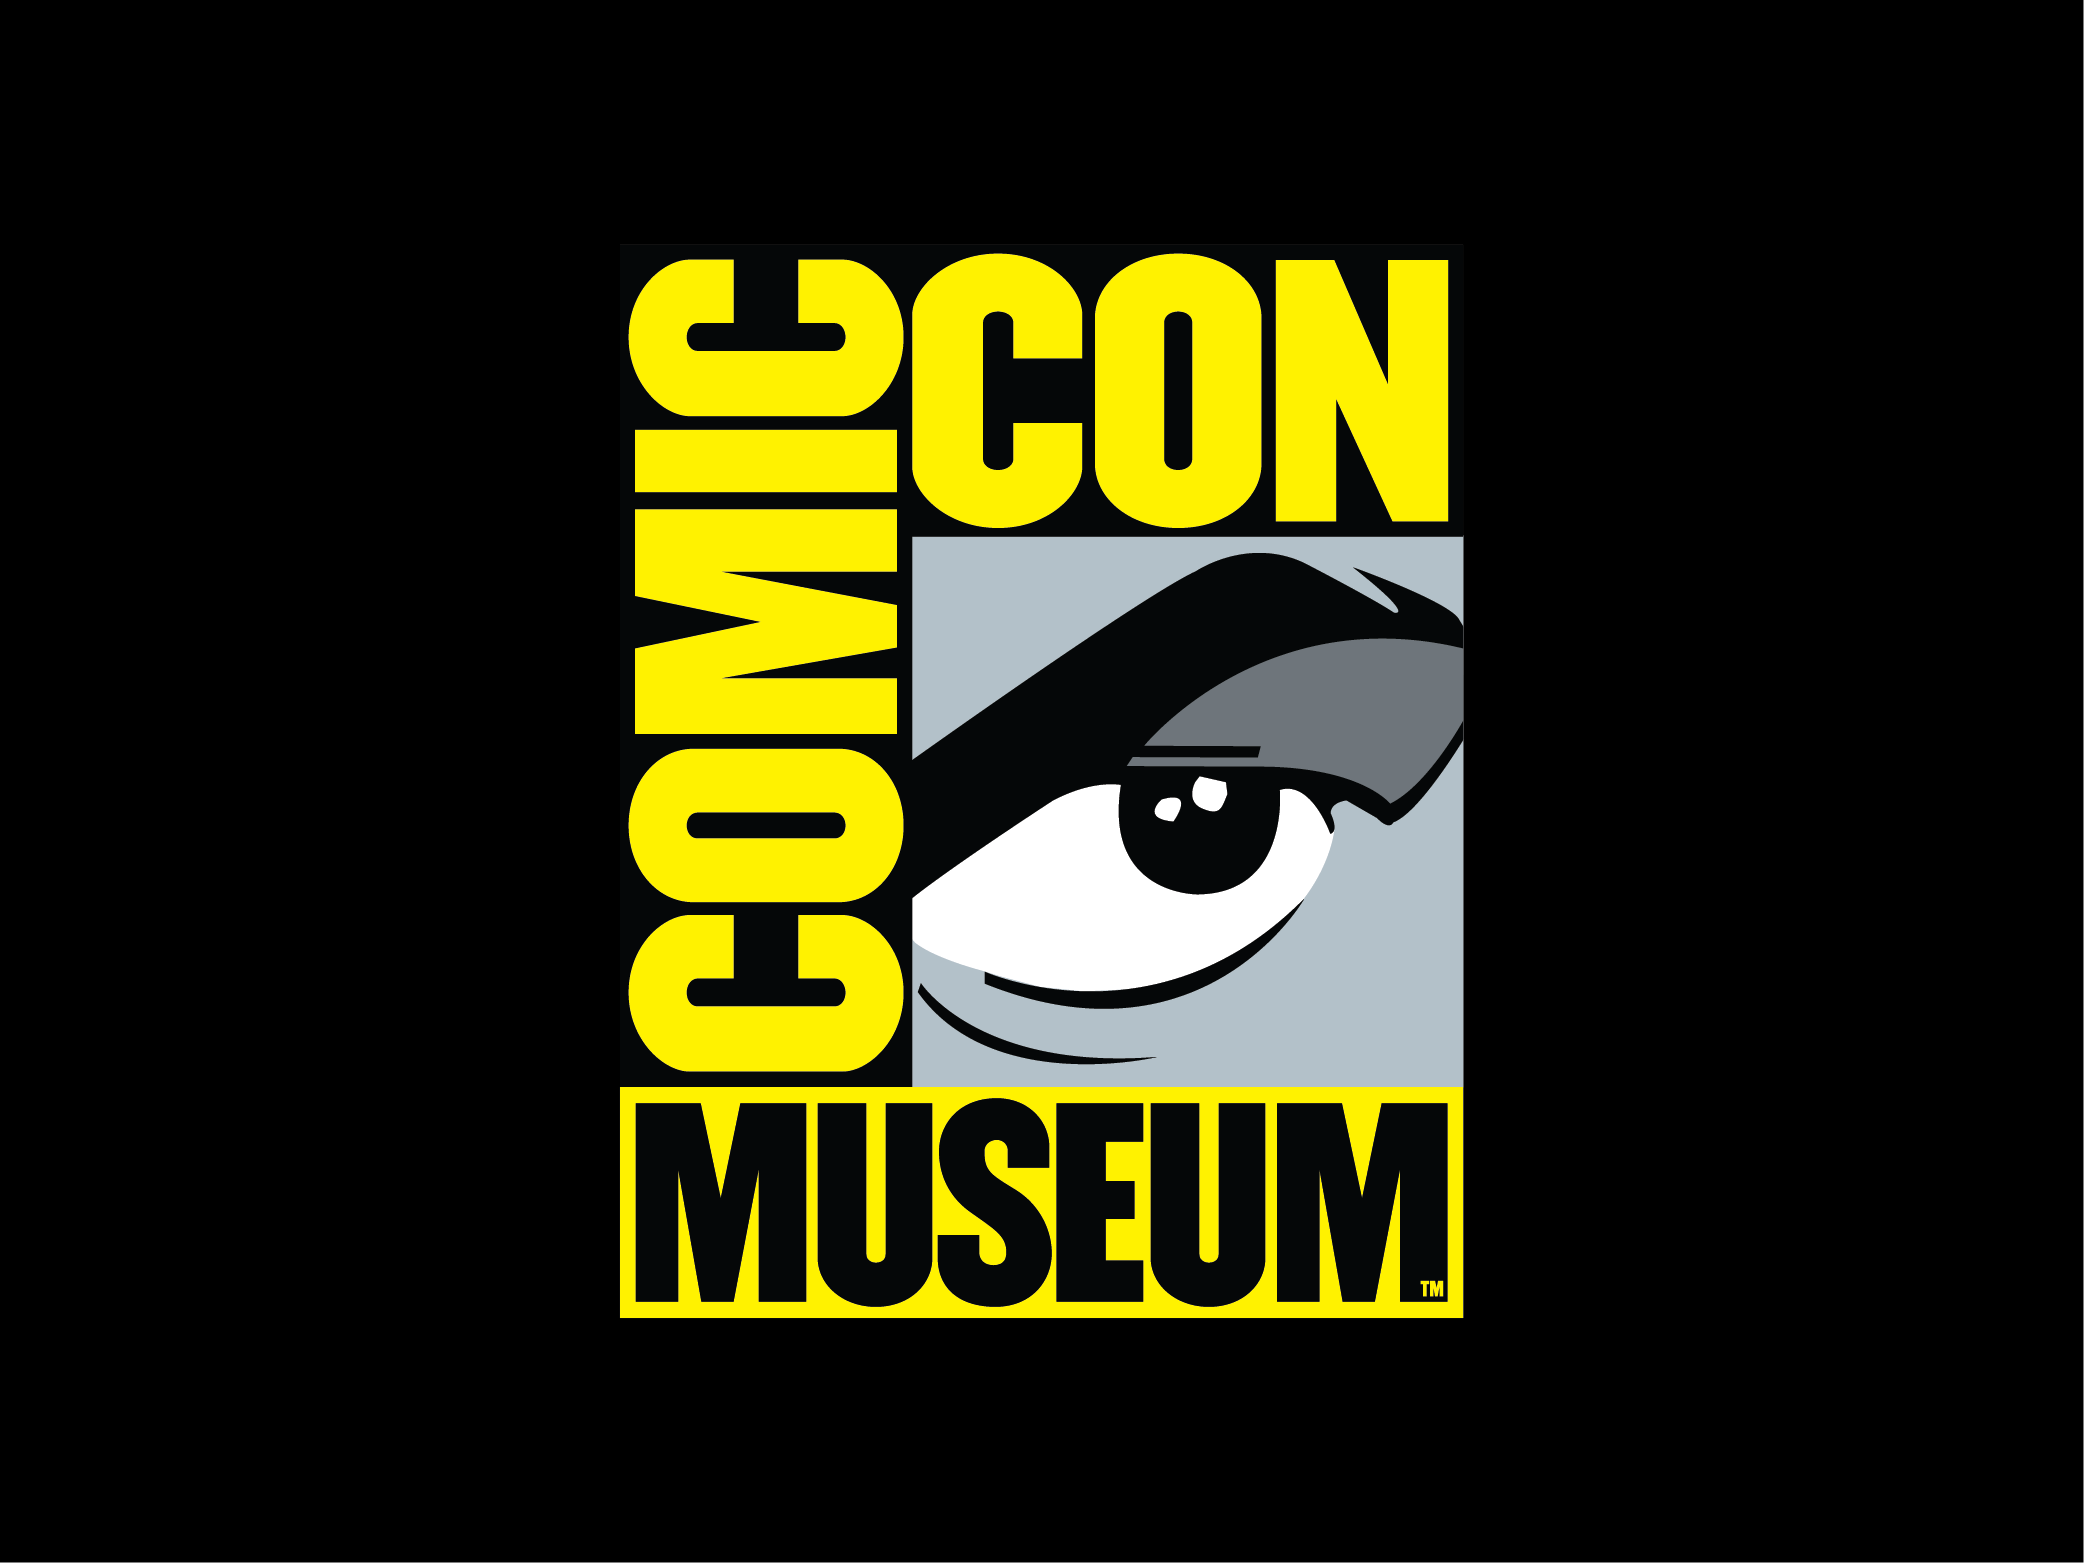 Immagine del logo del Comic-Con Museum.